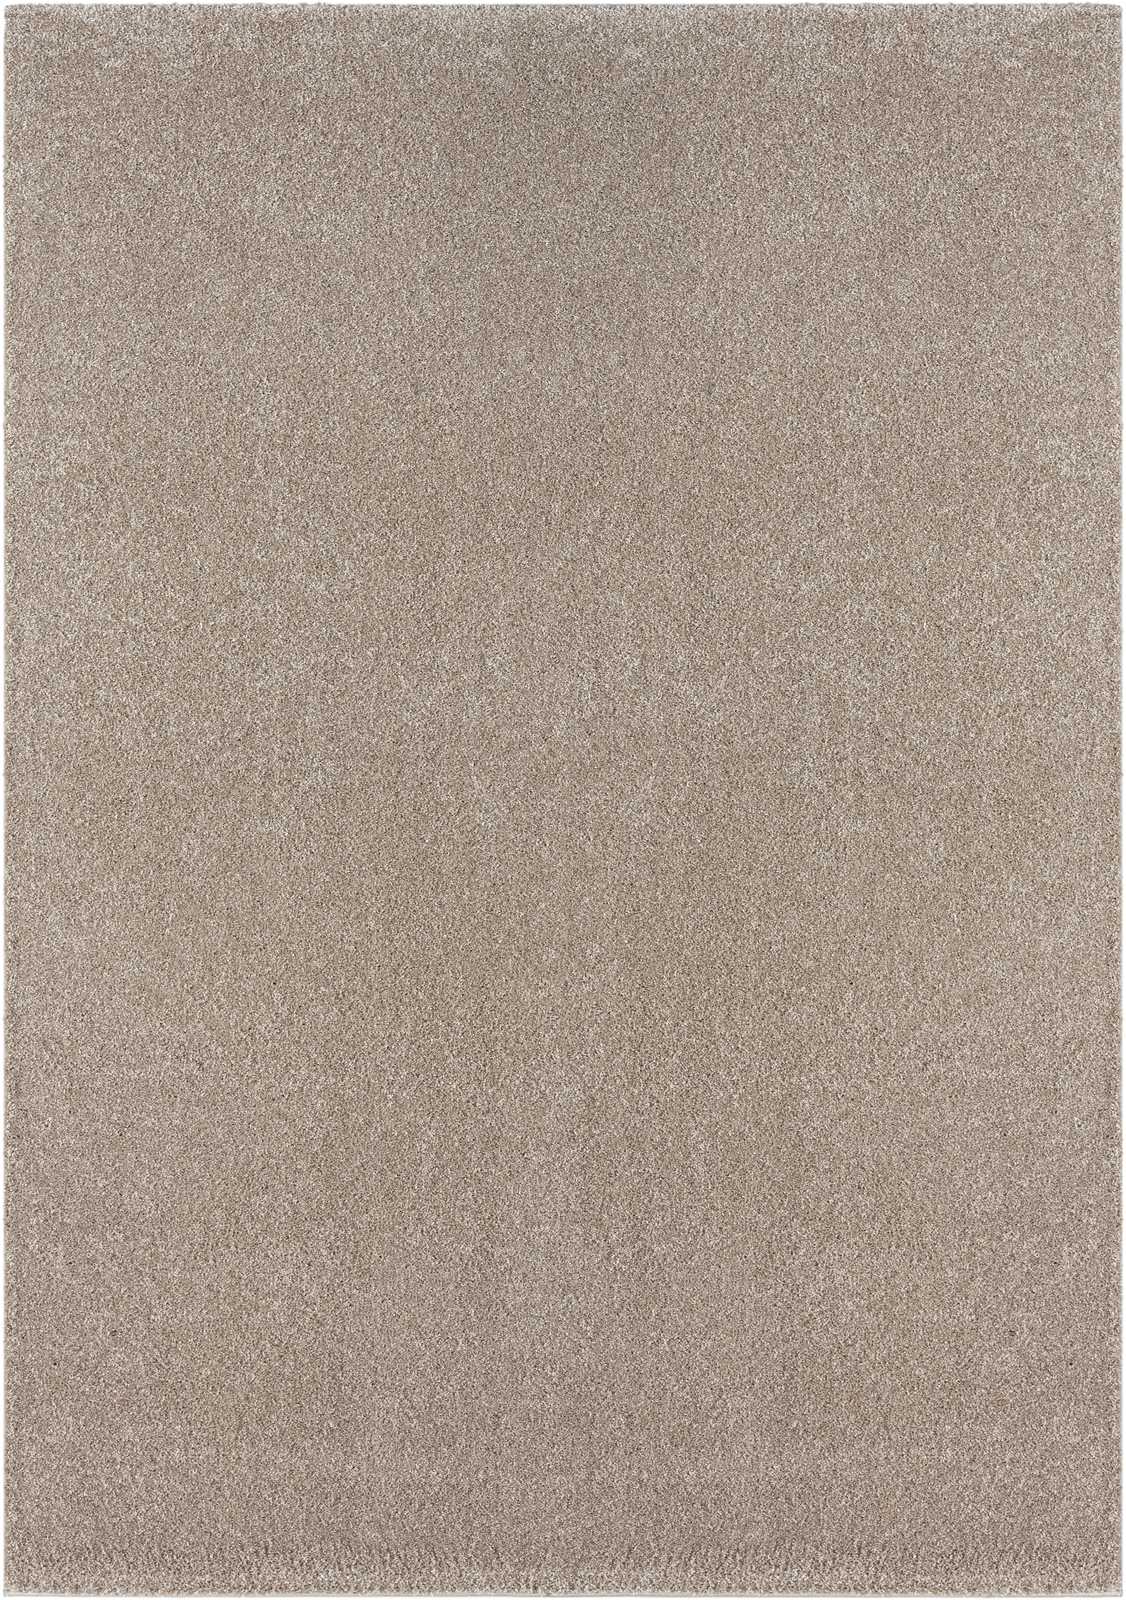             Tapis à poils courts doux beige - 290 x 200 cm
        